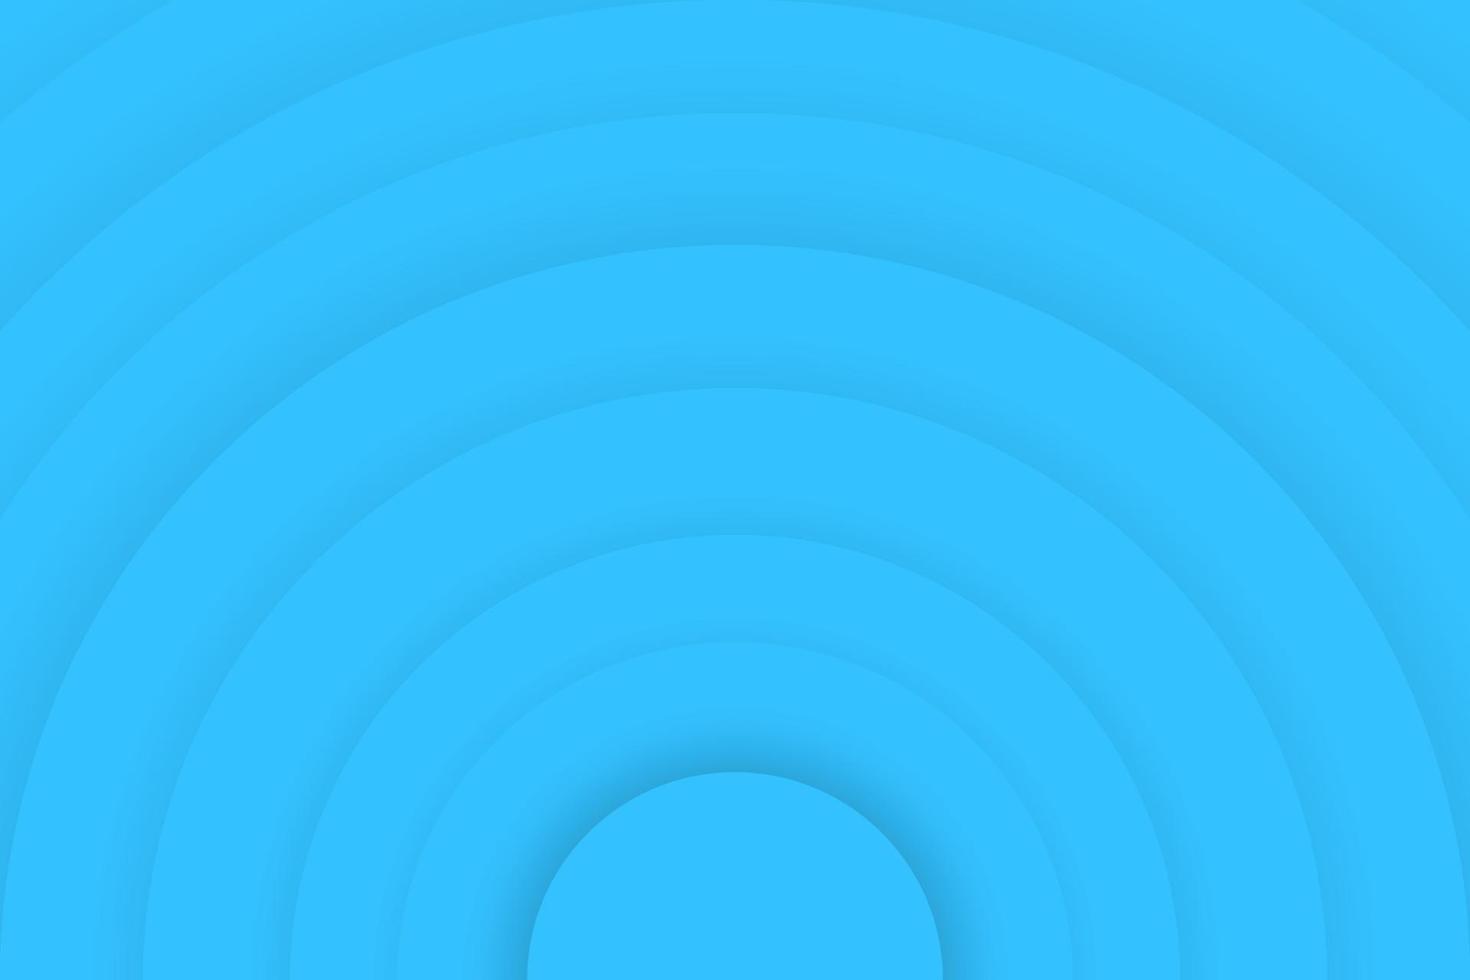 Vektor-Illustration abstrakt blau Muster nahtlose Kurve Shell Farbverlauf 3D-Form Bewegung vektor